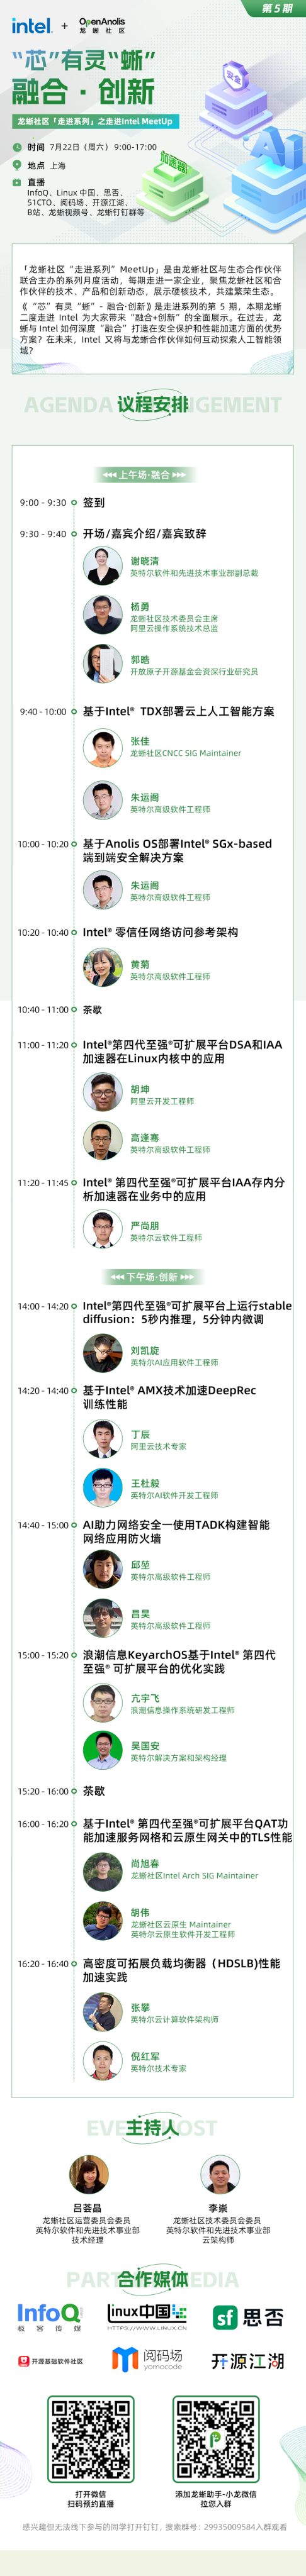 倒计时 1 天！21 位大咖 11个议题，龙蜥社区走进 Intel MeetUp 即将在上海召开-开源基础软件社区